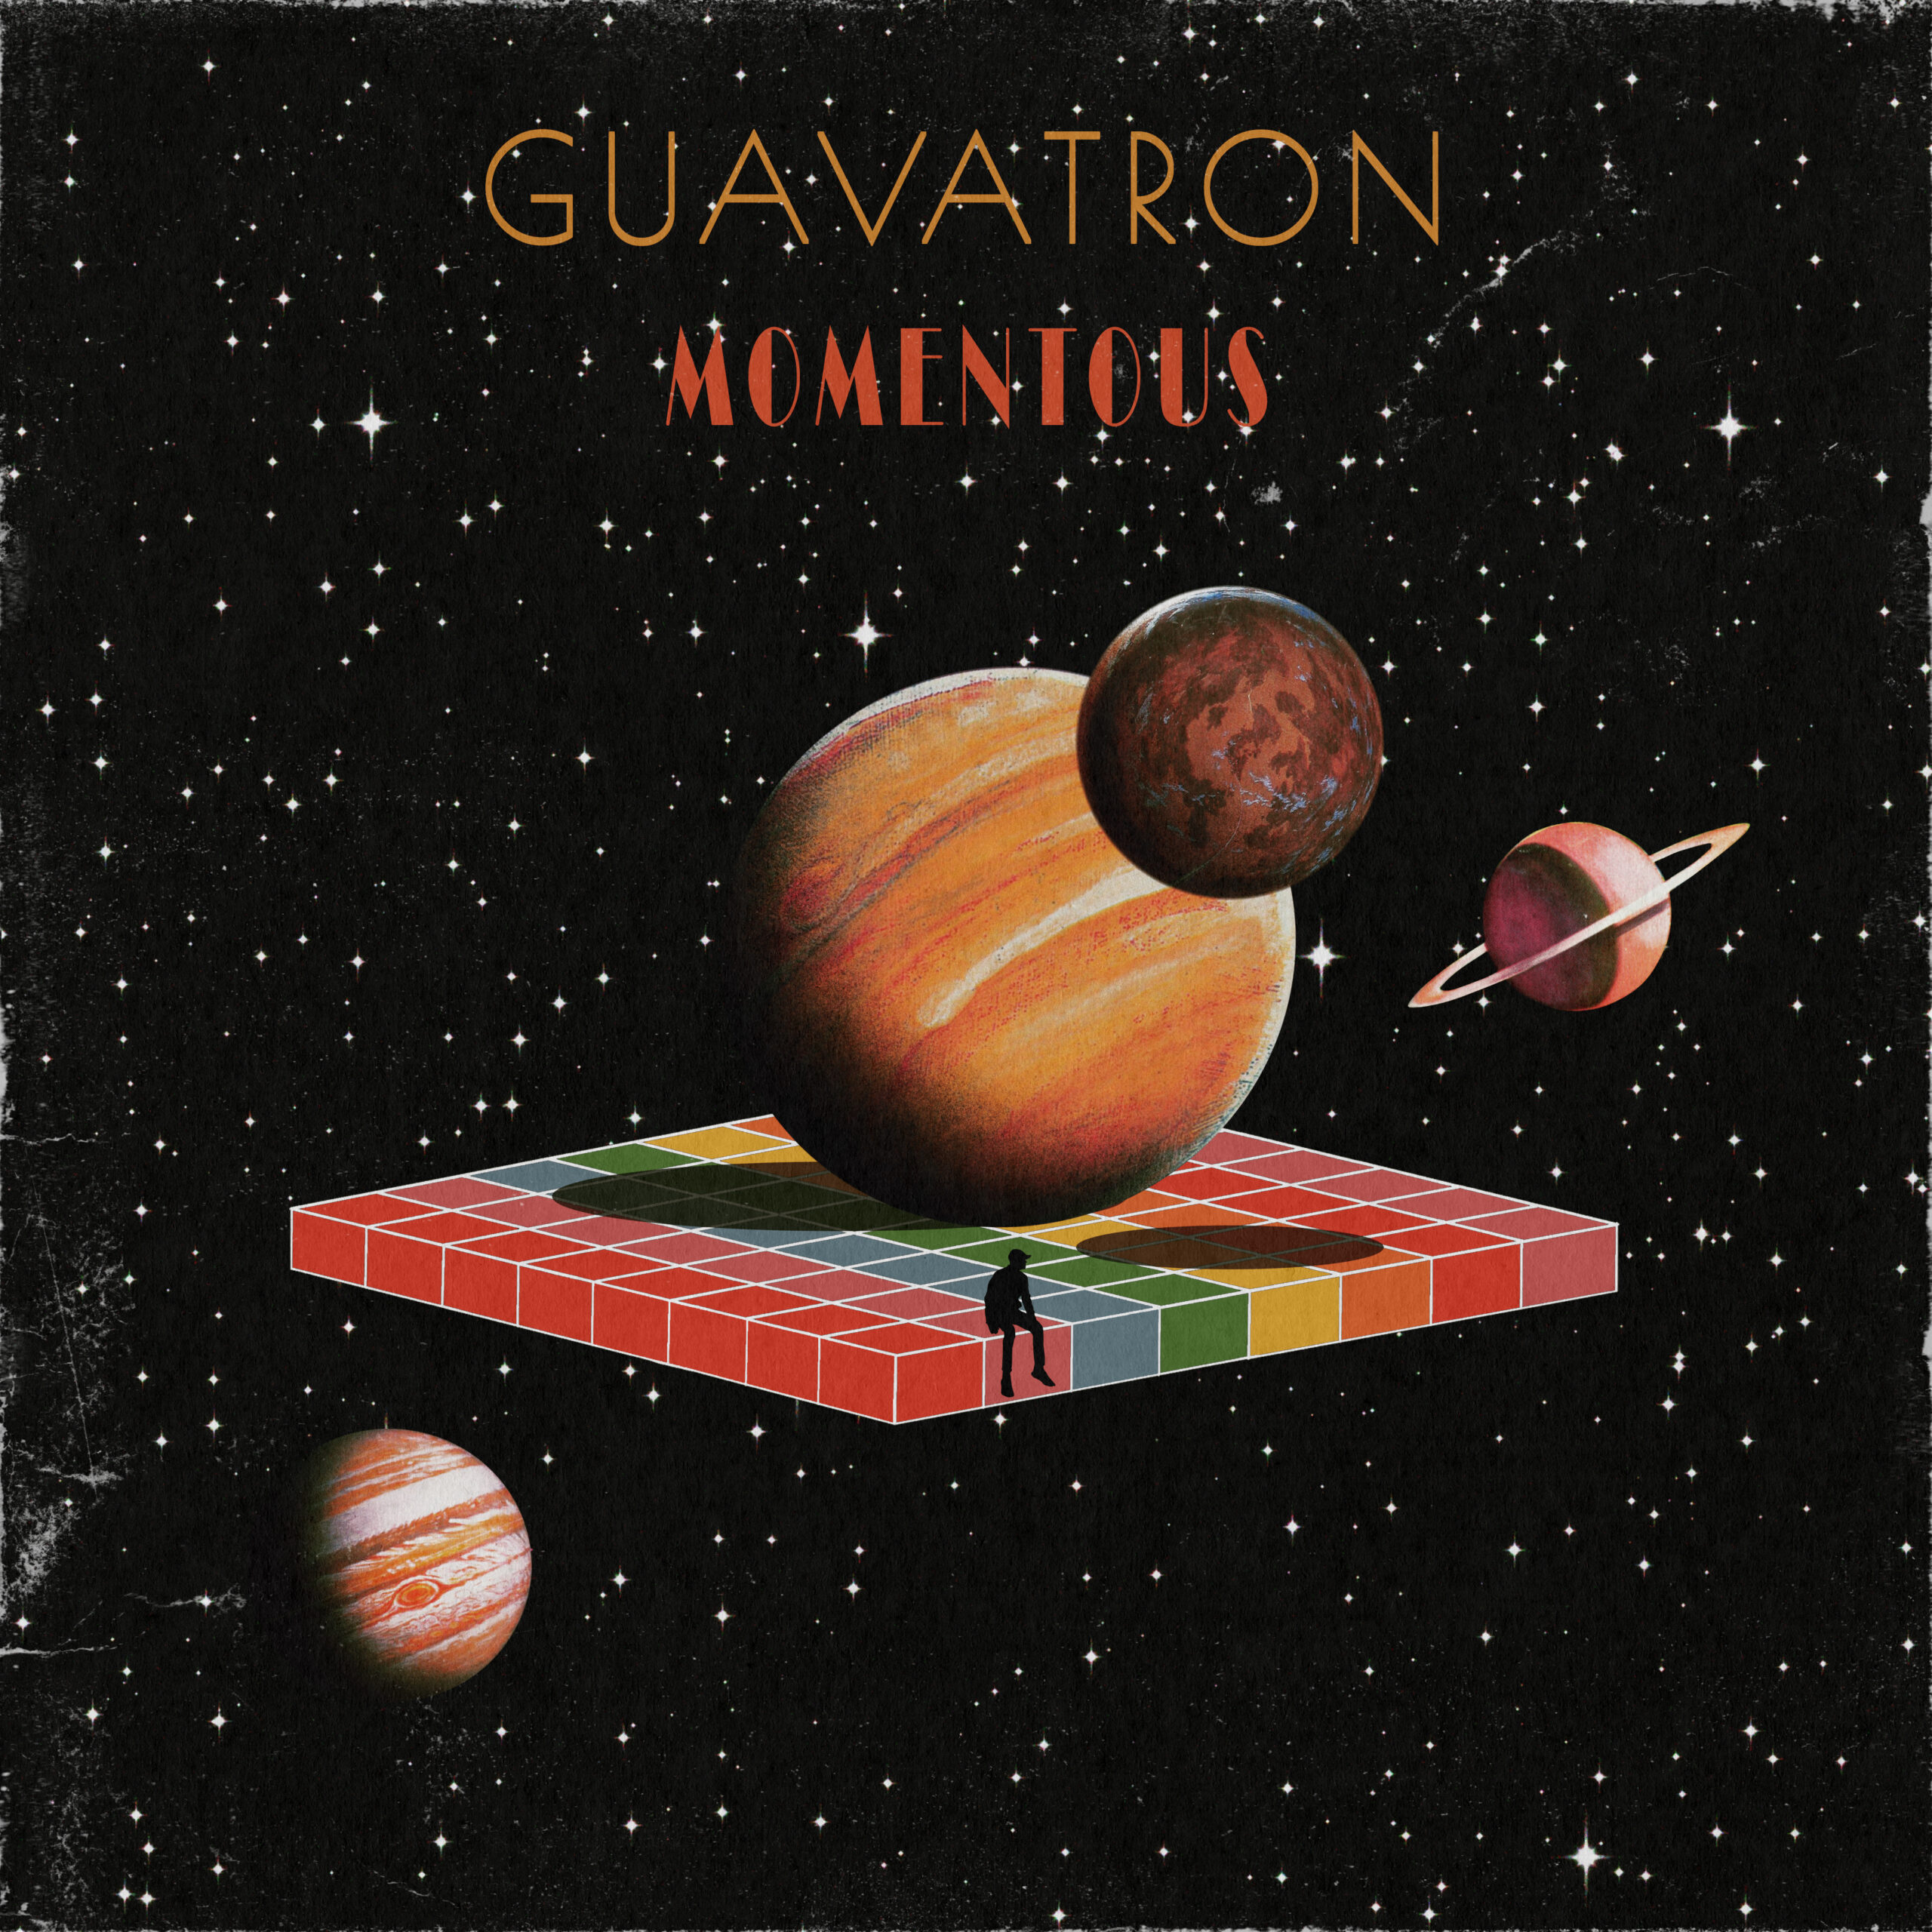 Guavatron Momentous